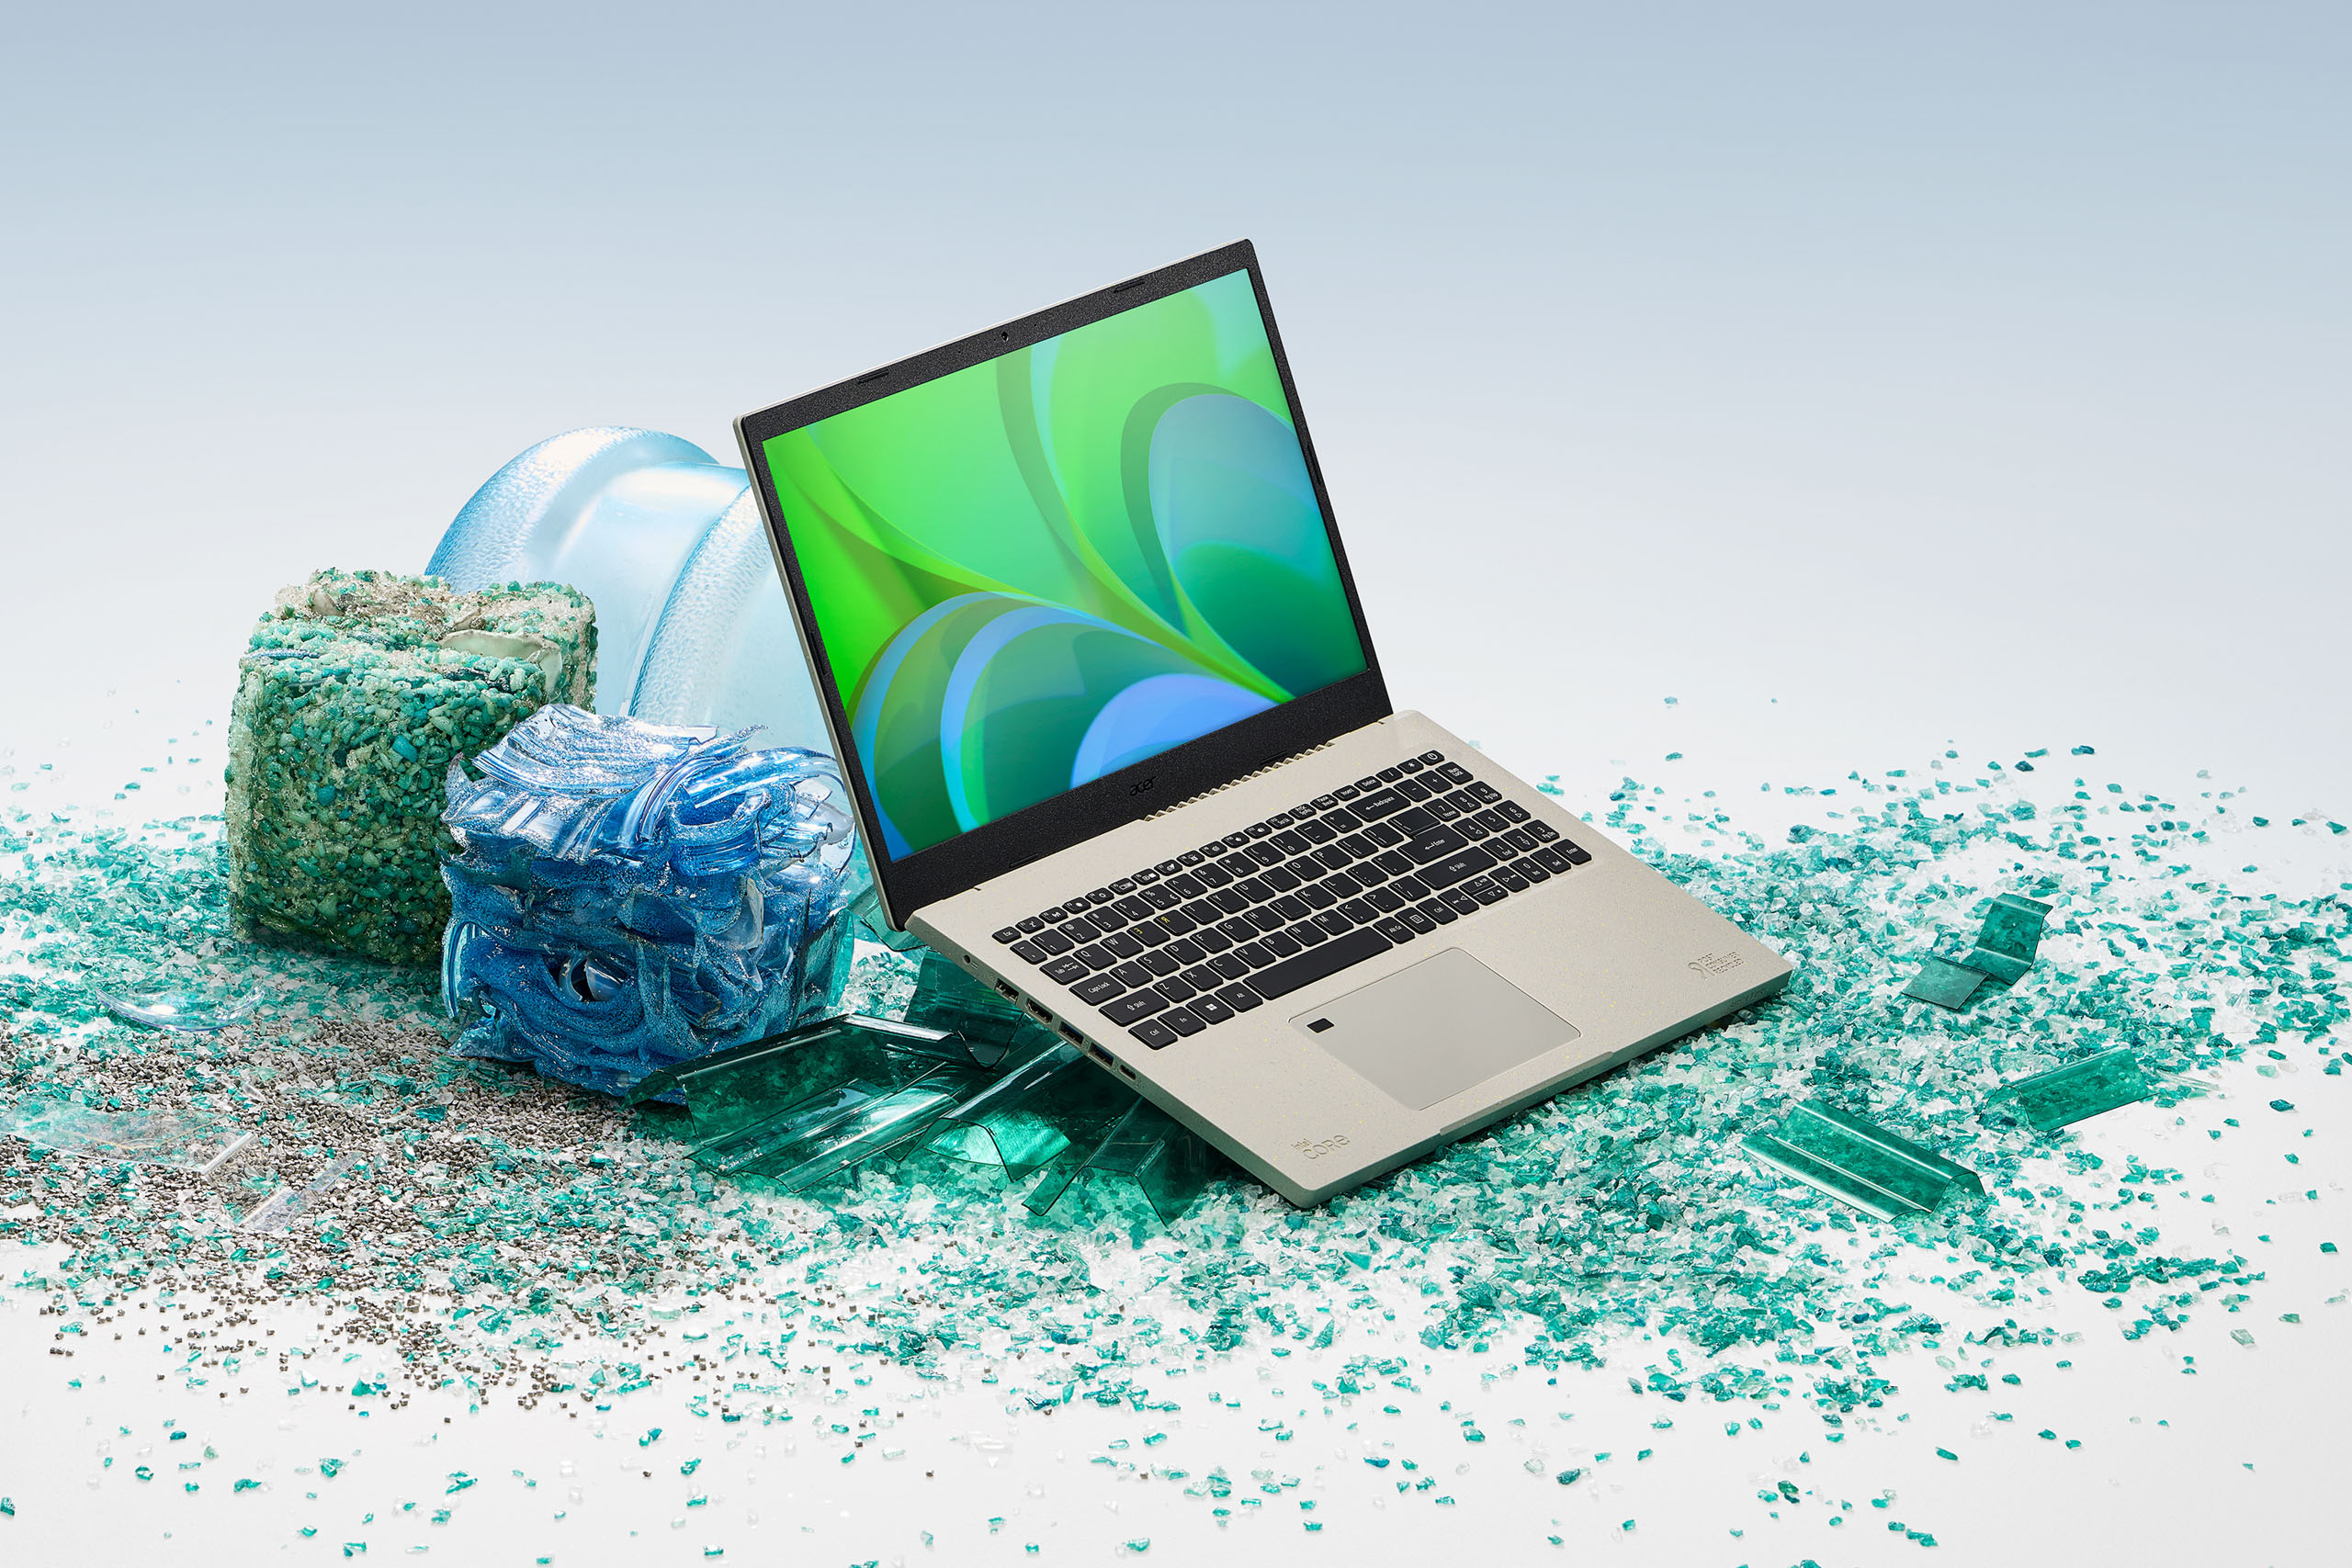 Acer giới thiệu laptop Aspire Vero và dải sản phẩm Vero sử dụng nhựa tái chế (PCR) và bao bì có thể tái chế